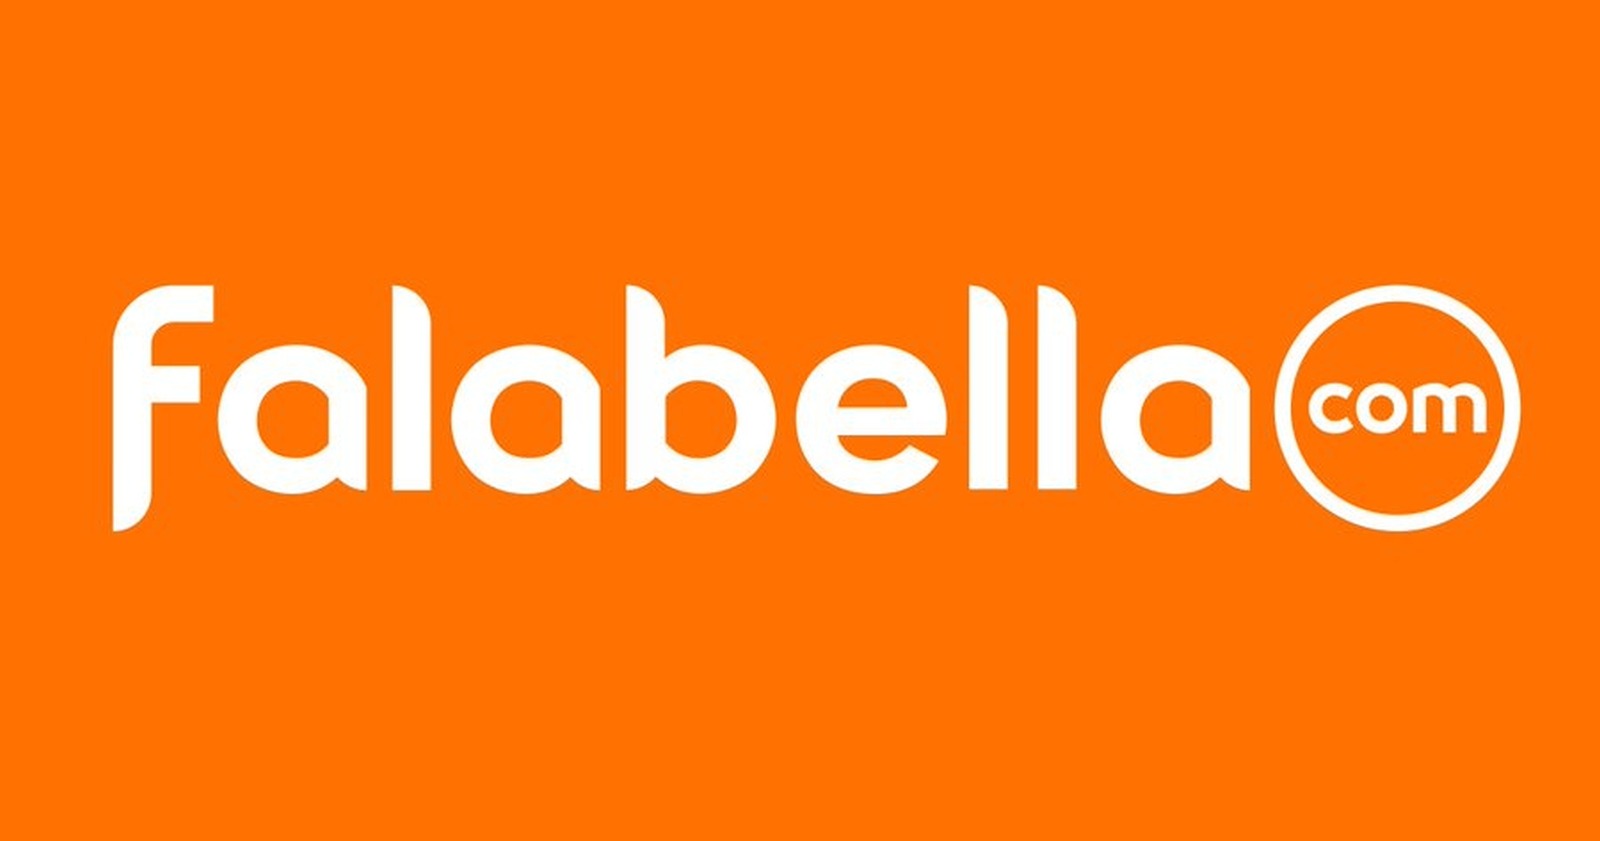  Falabella将合并零售与电商业务